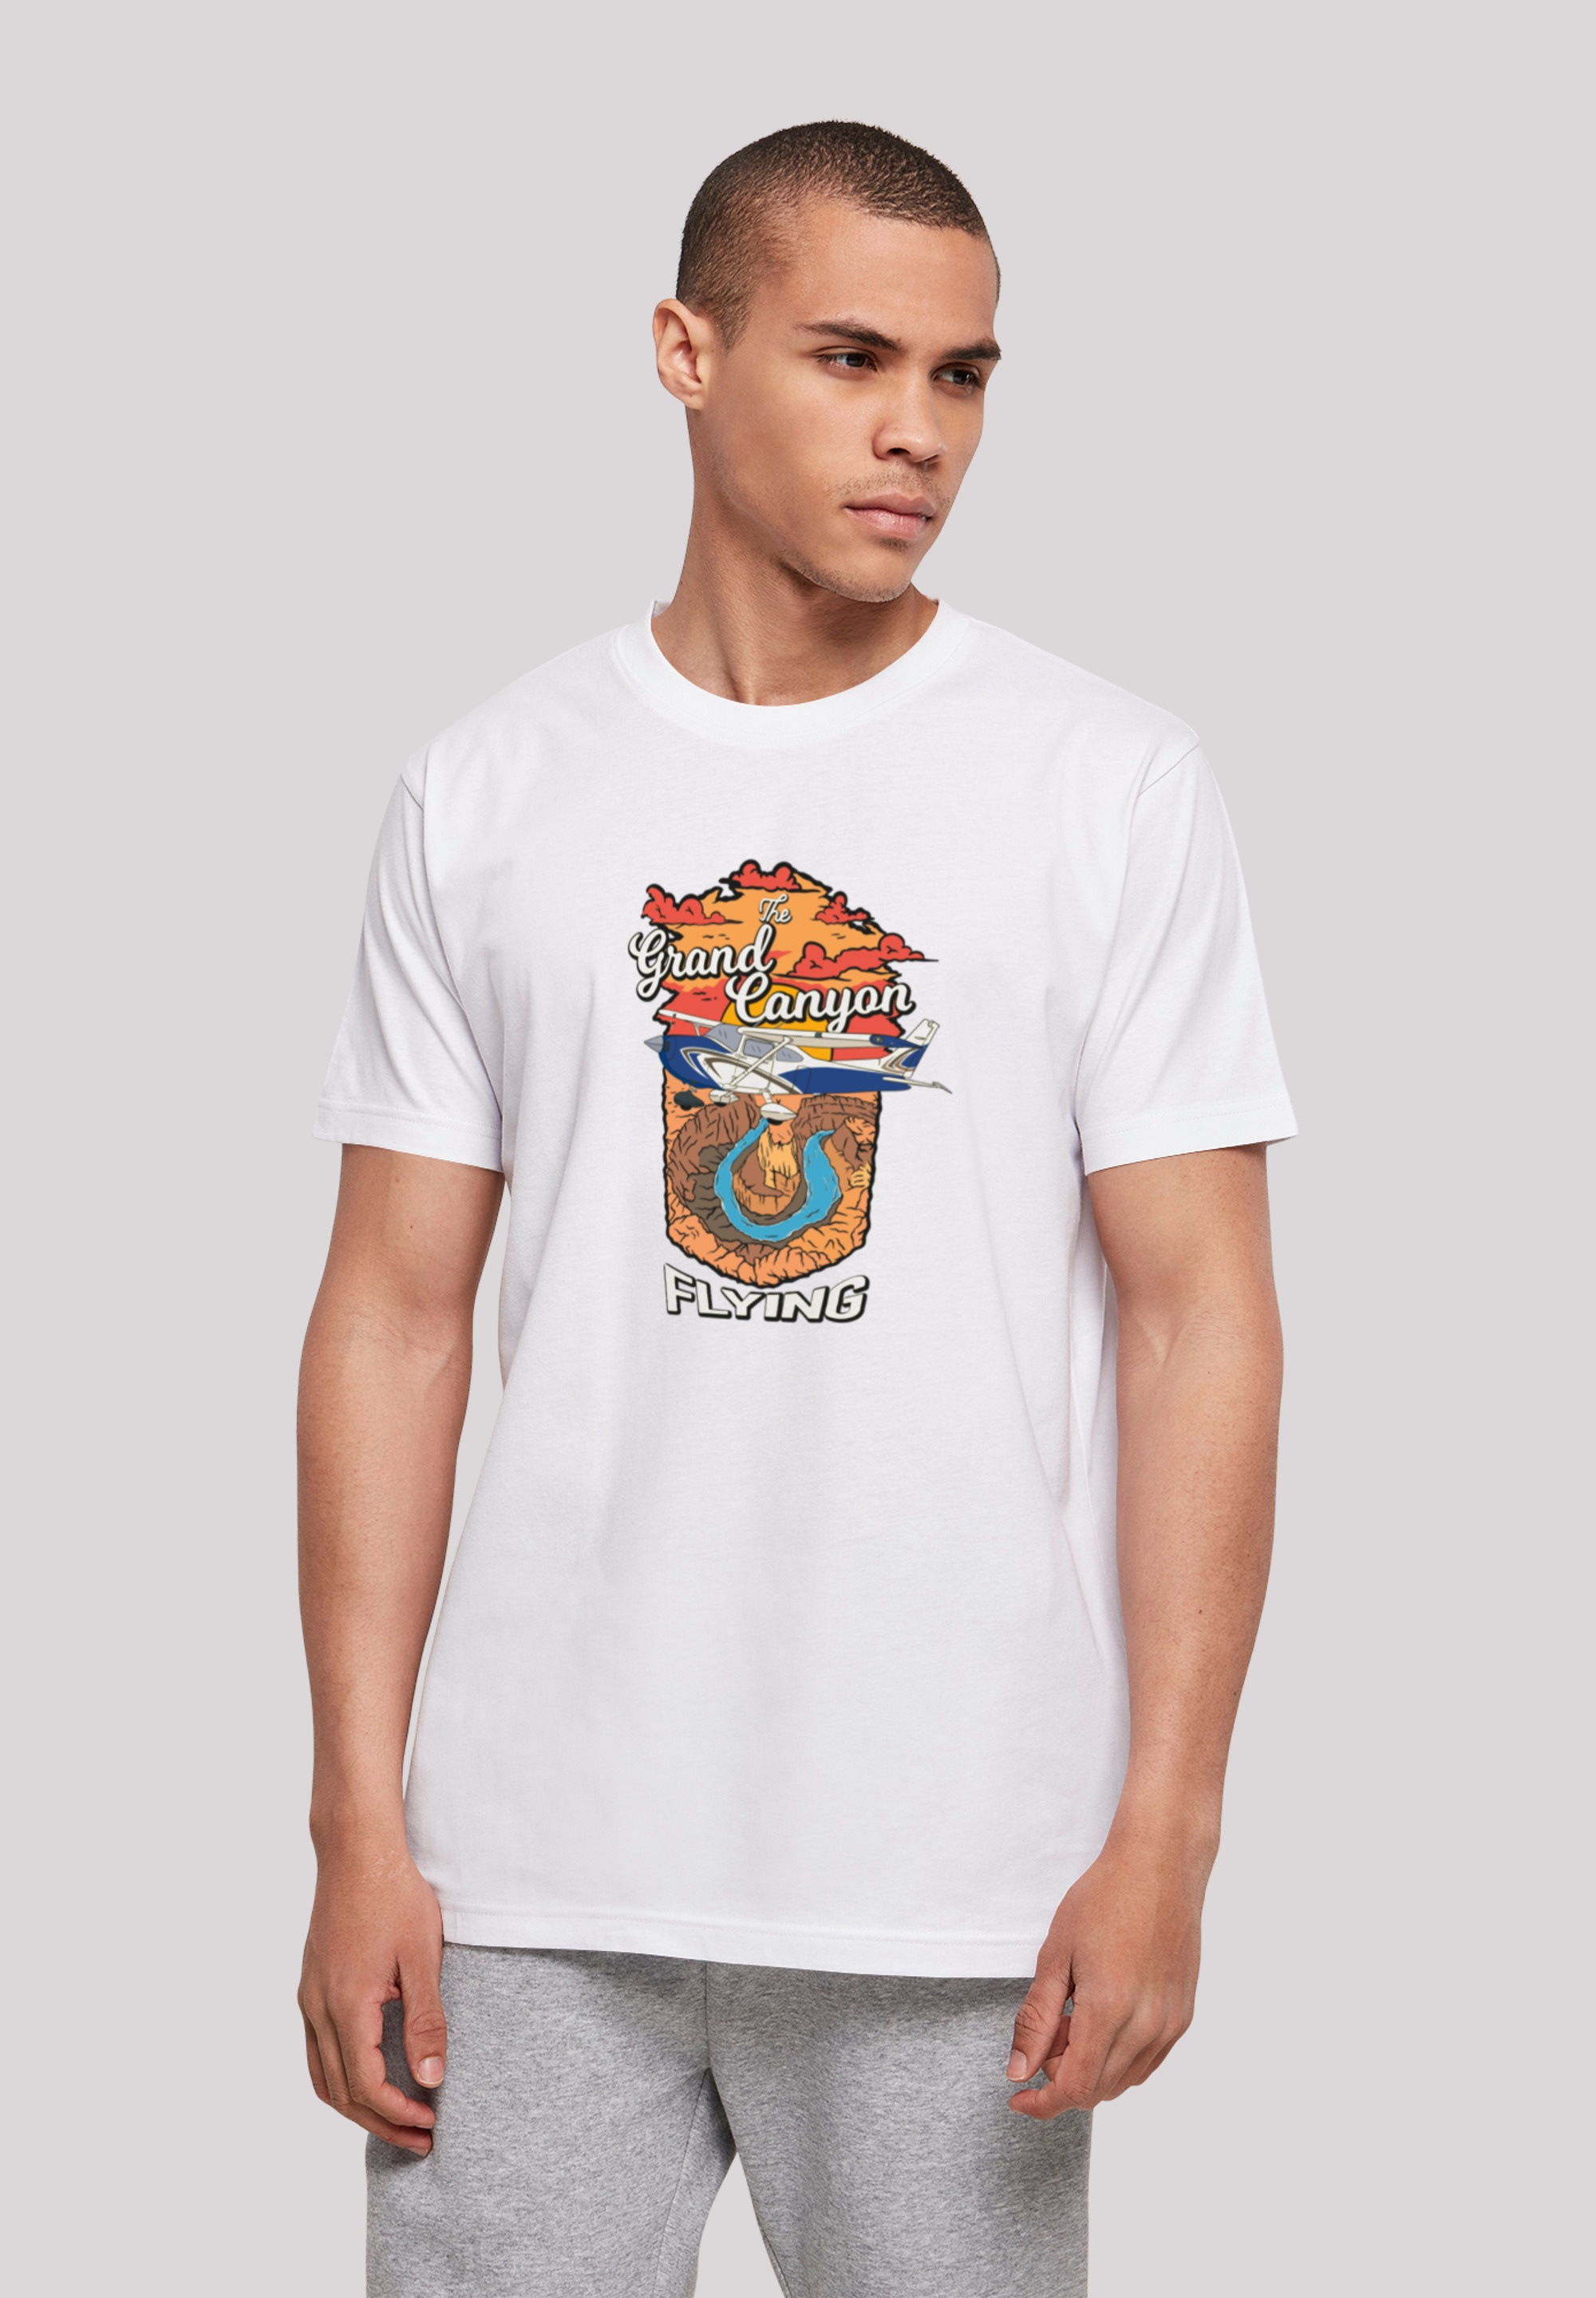 T-Shirt »Grand Canyon Flying«, Print